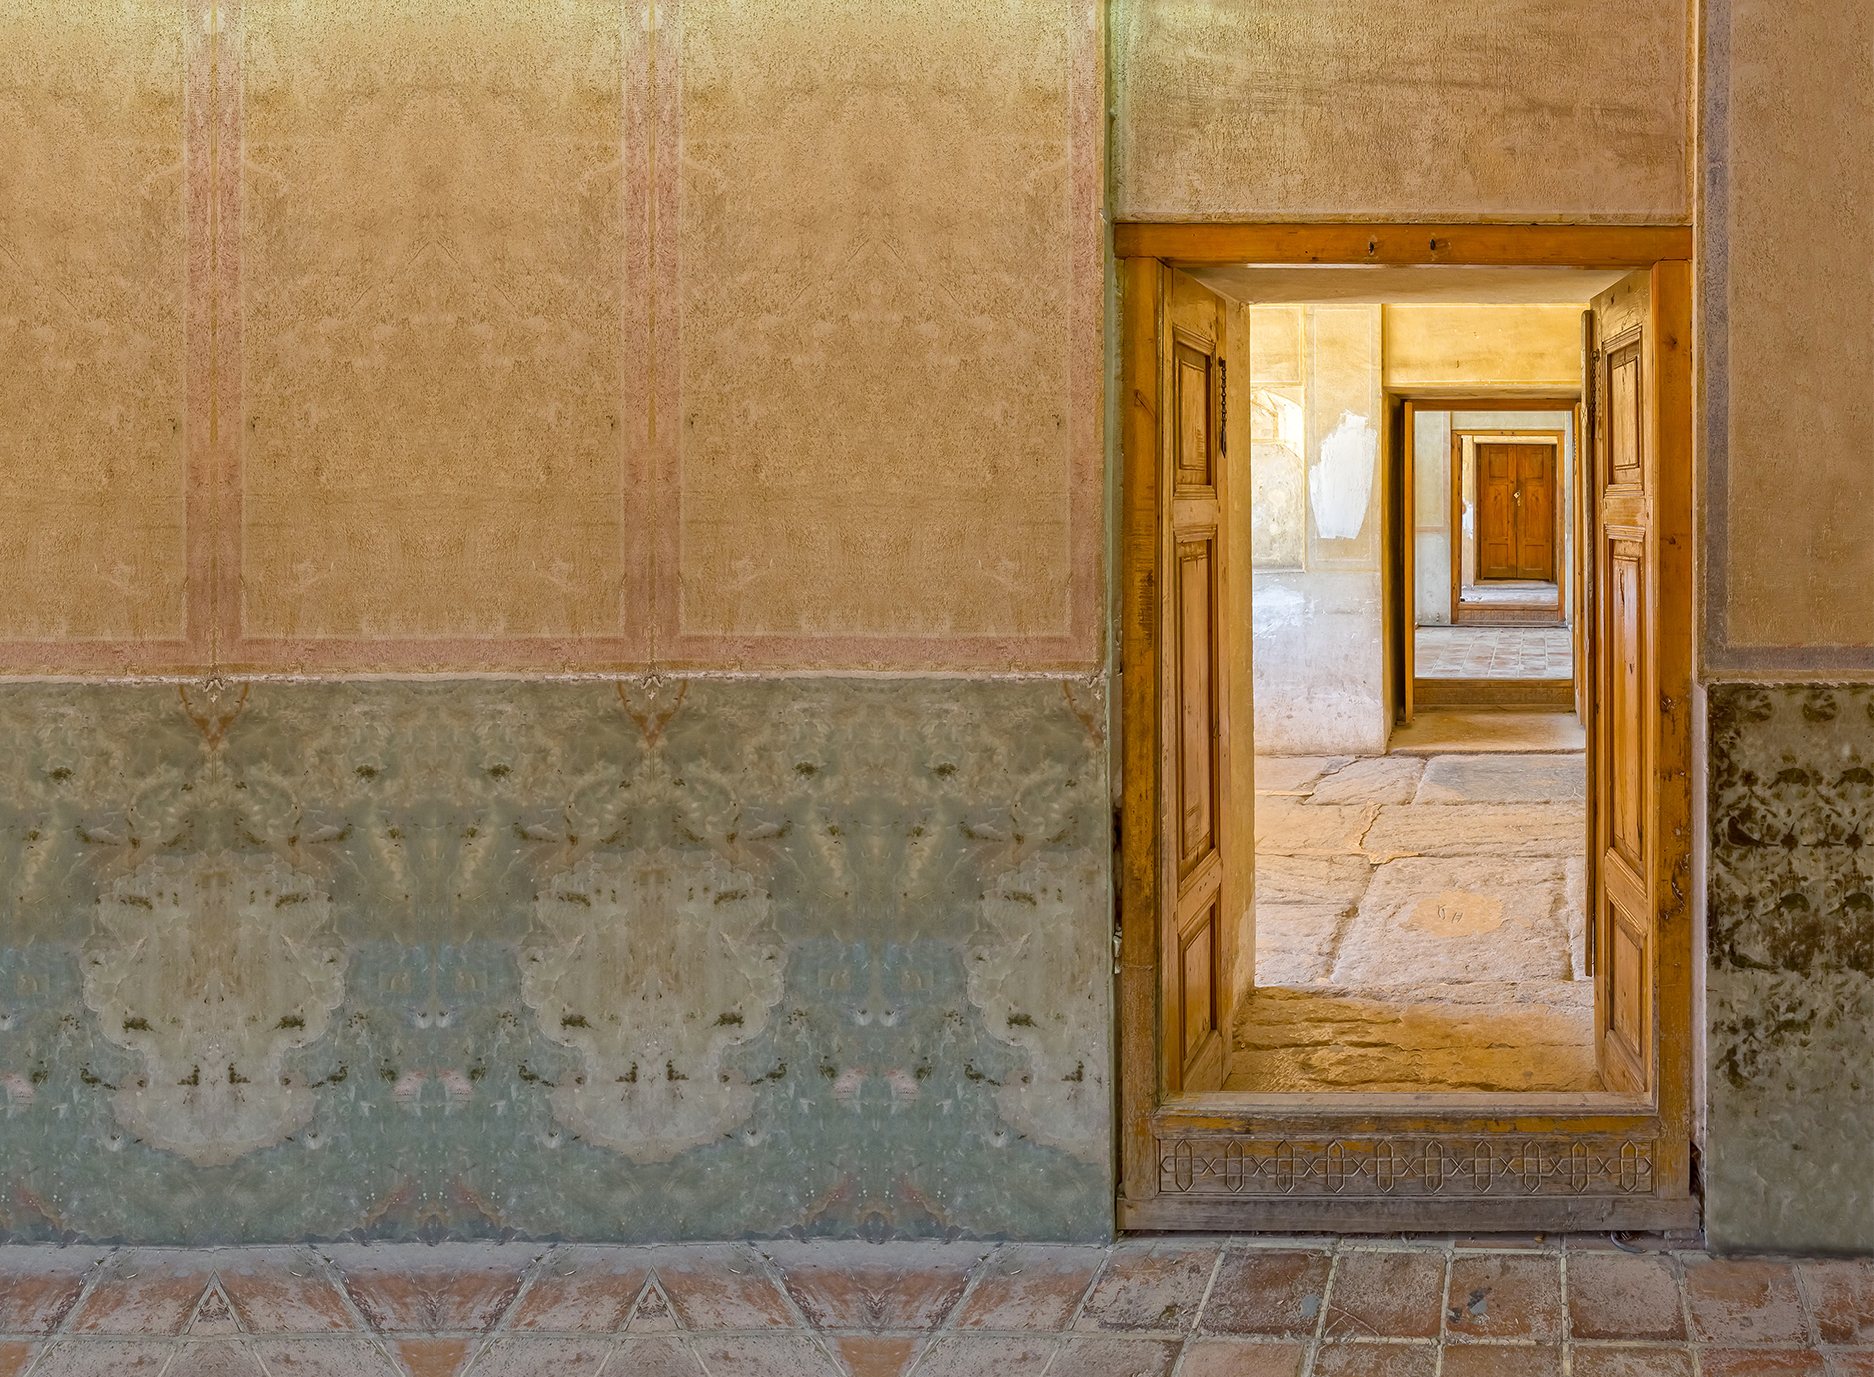 Foto einer geöffneten Tür, die in weitere offene Räume führt in persischer Architektur